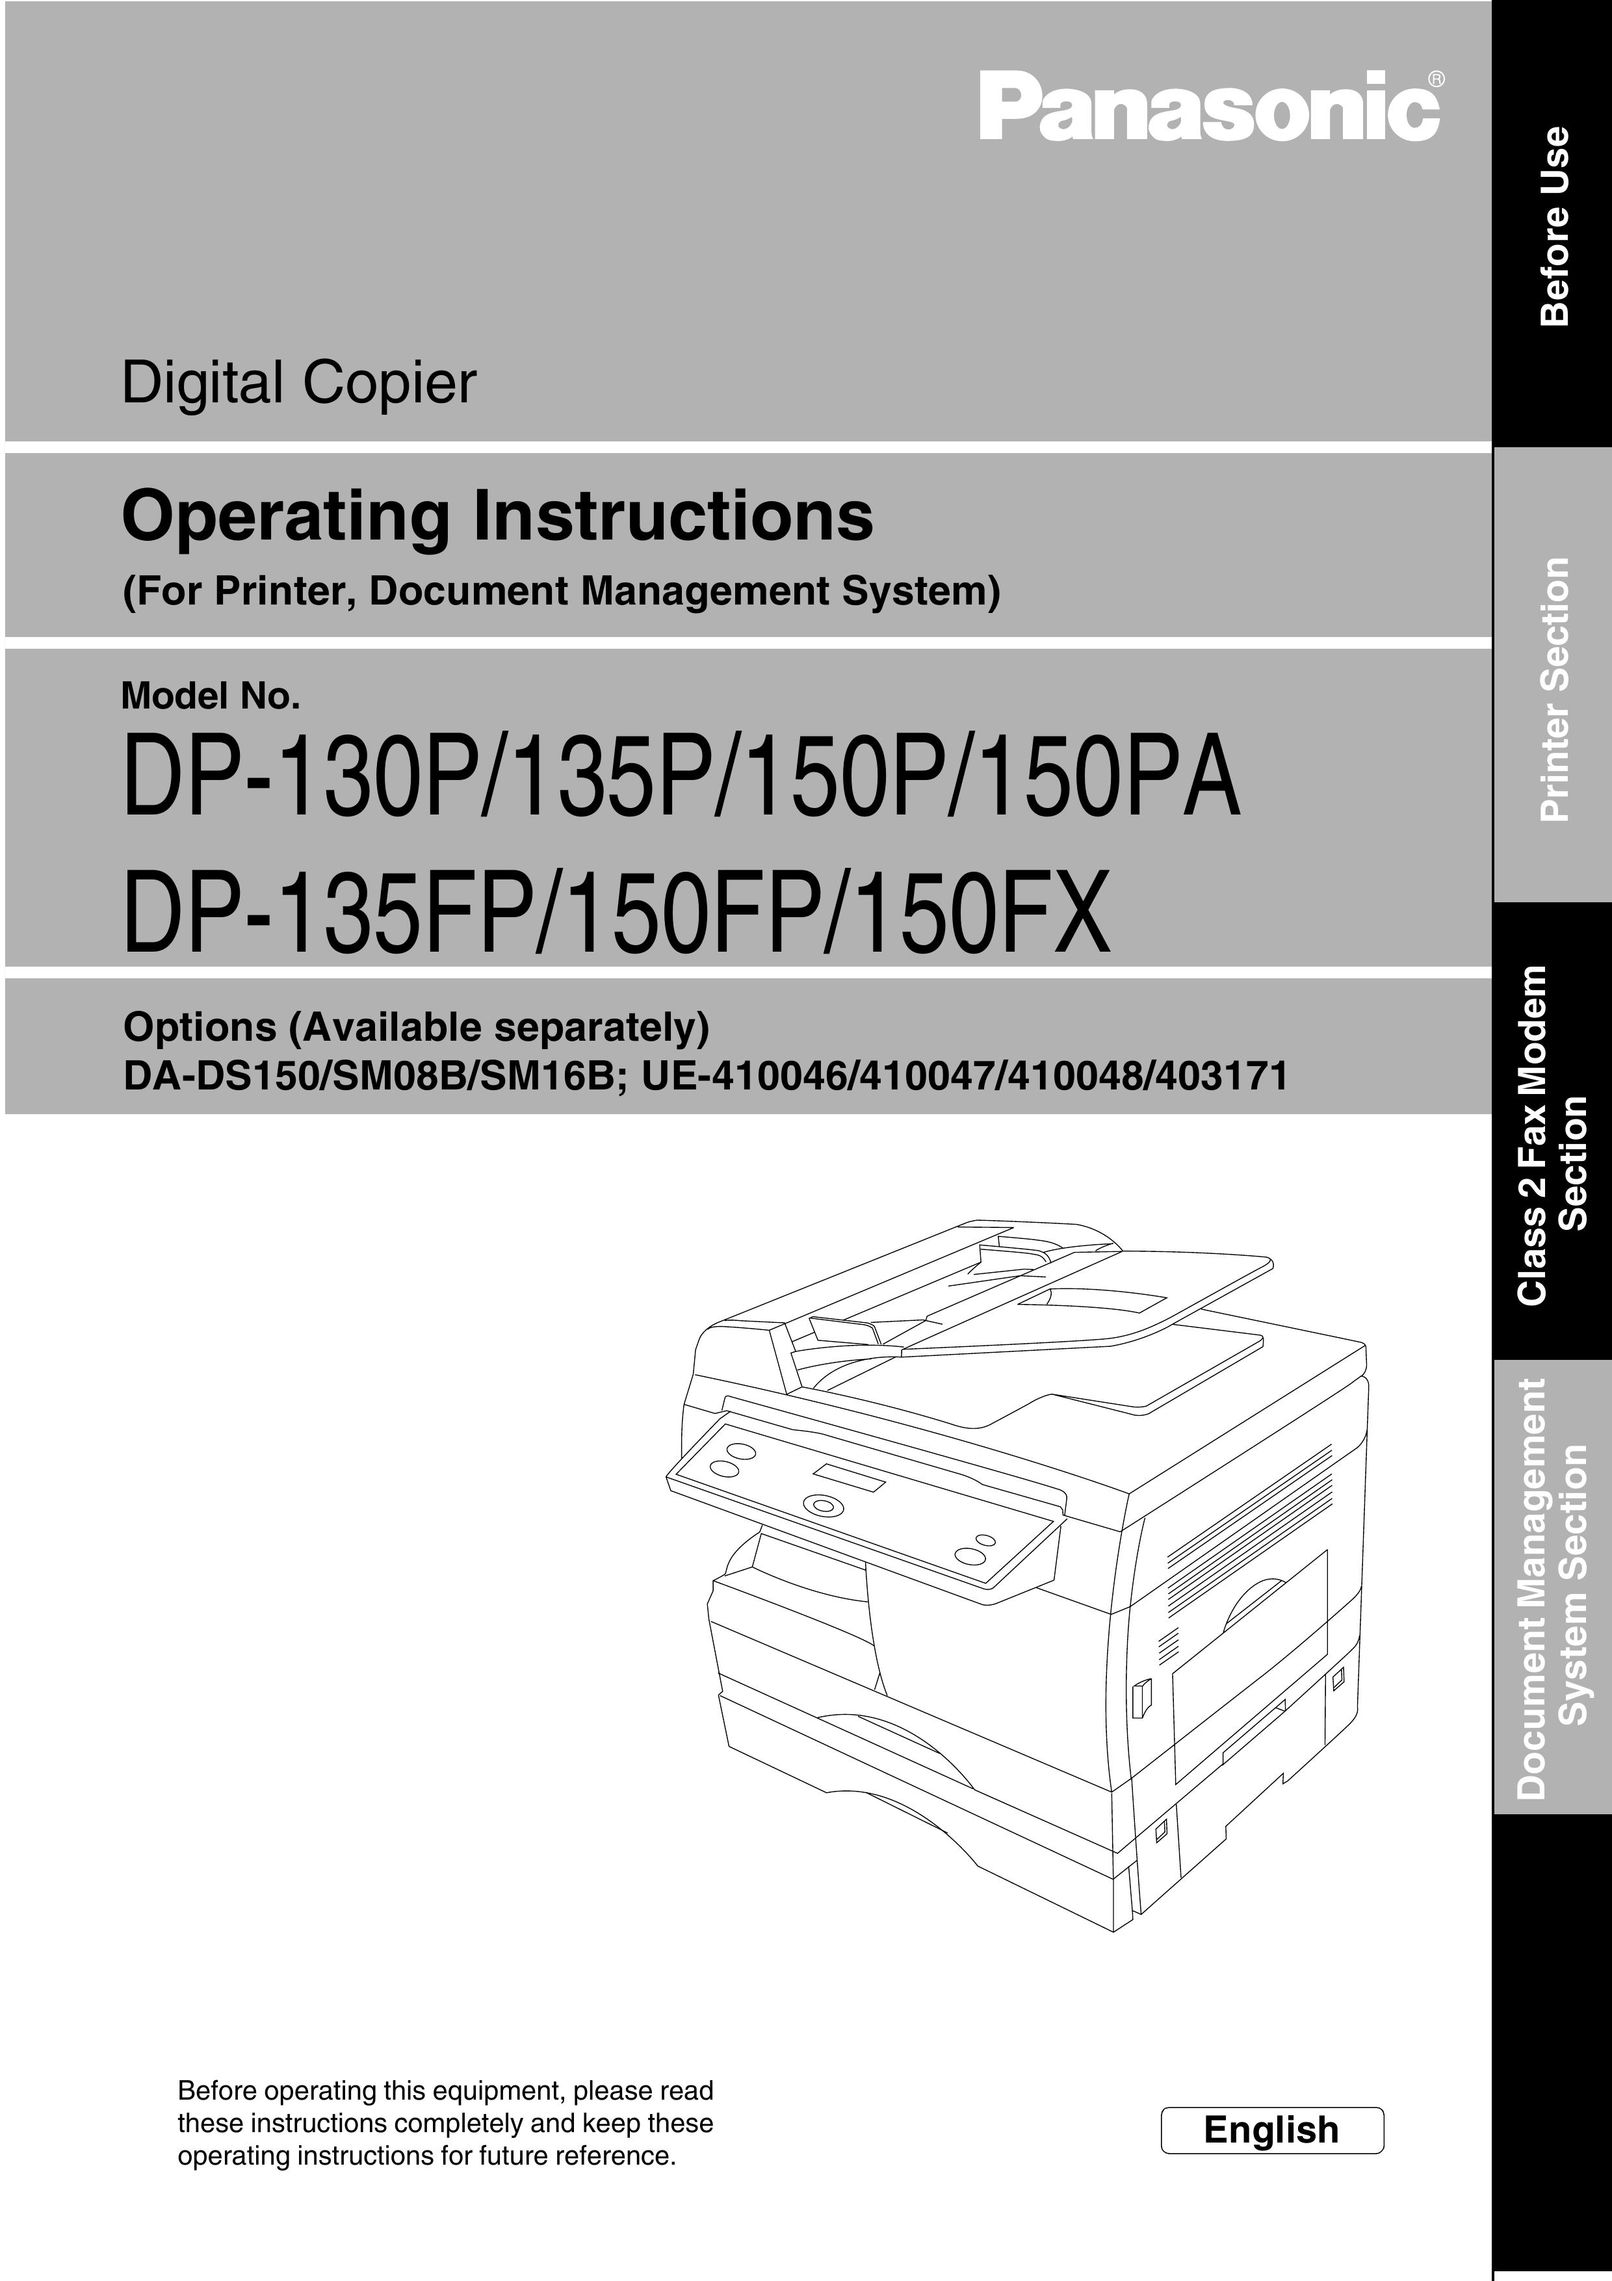 Panasonic 135FP All in One Printer User Manual